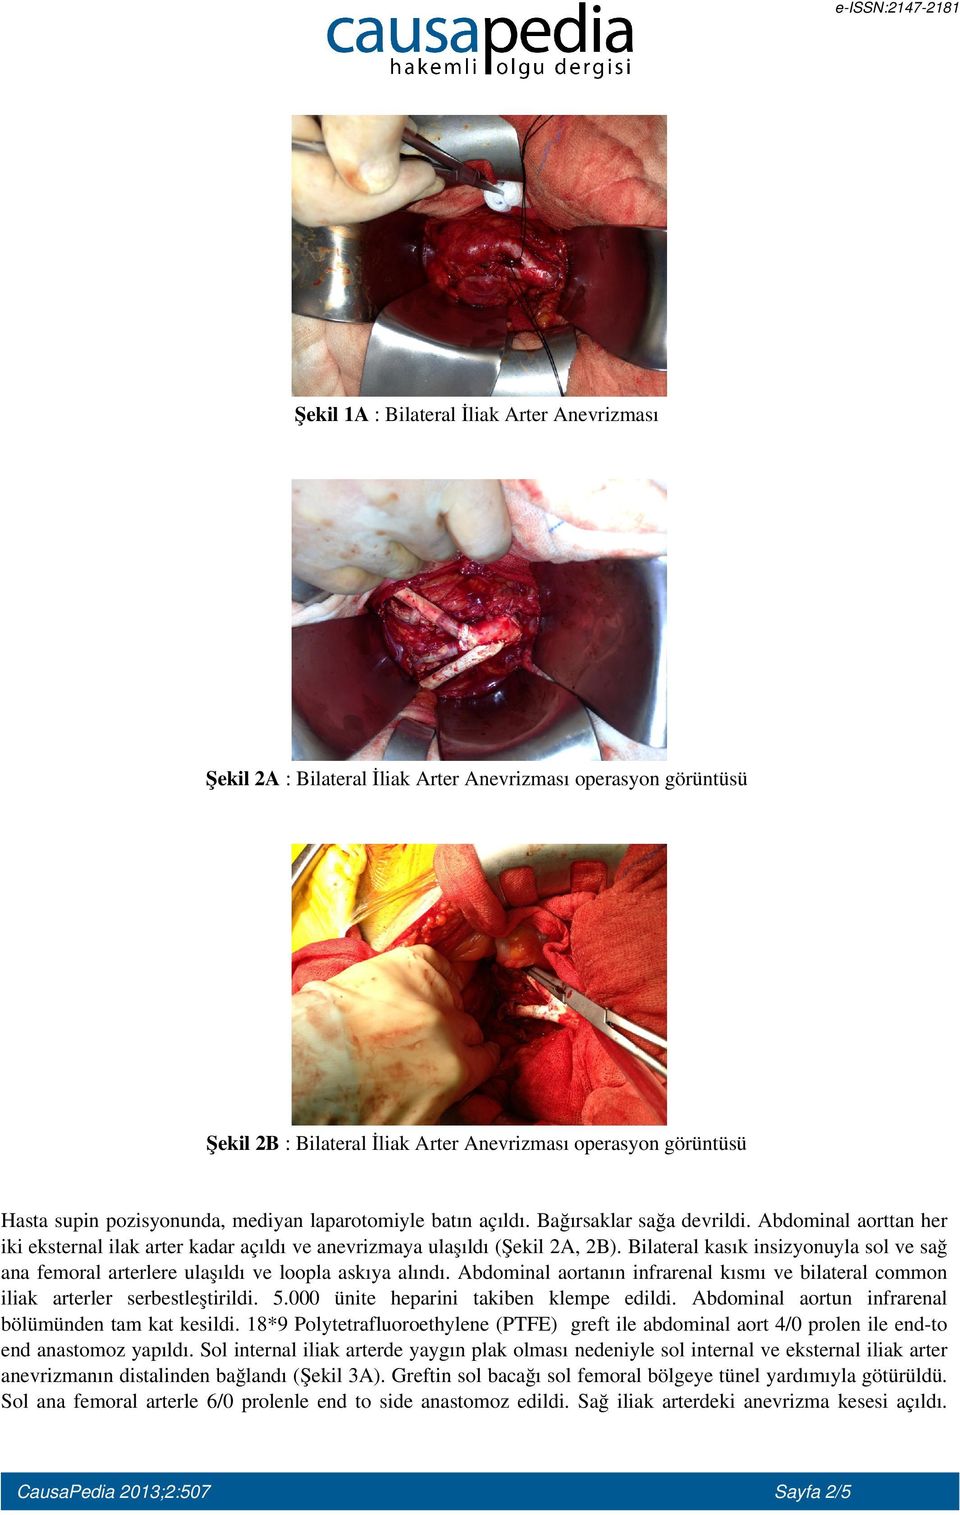 Bilateral kasık insizyonuyla sol ve sağ ana femoral arterlere ulaşıldı ve loopla askıya alındı. Abdominal aortanın infrarenal kısmı ve bilateral common iliak arterler serbestleştirildi. 5.